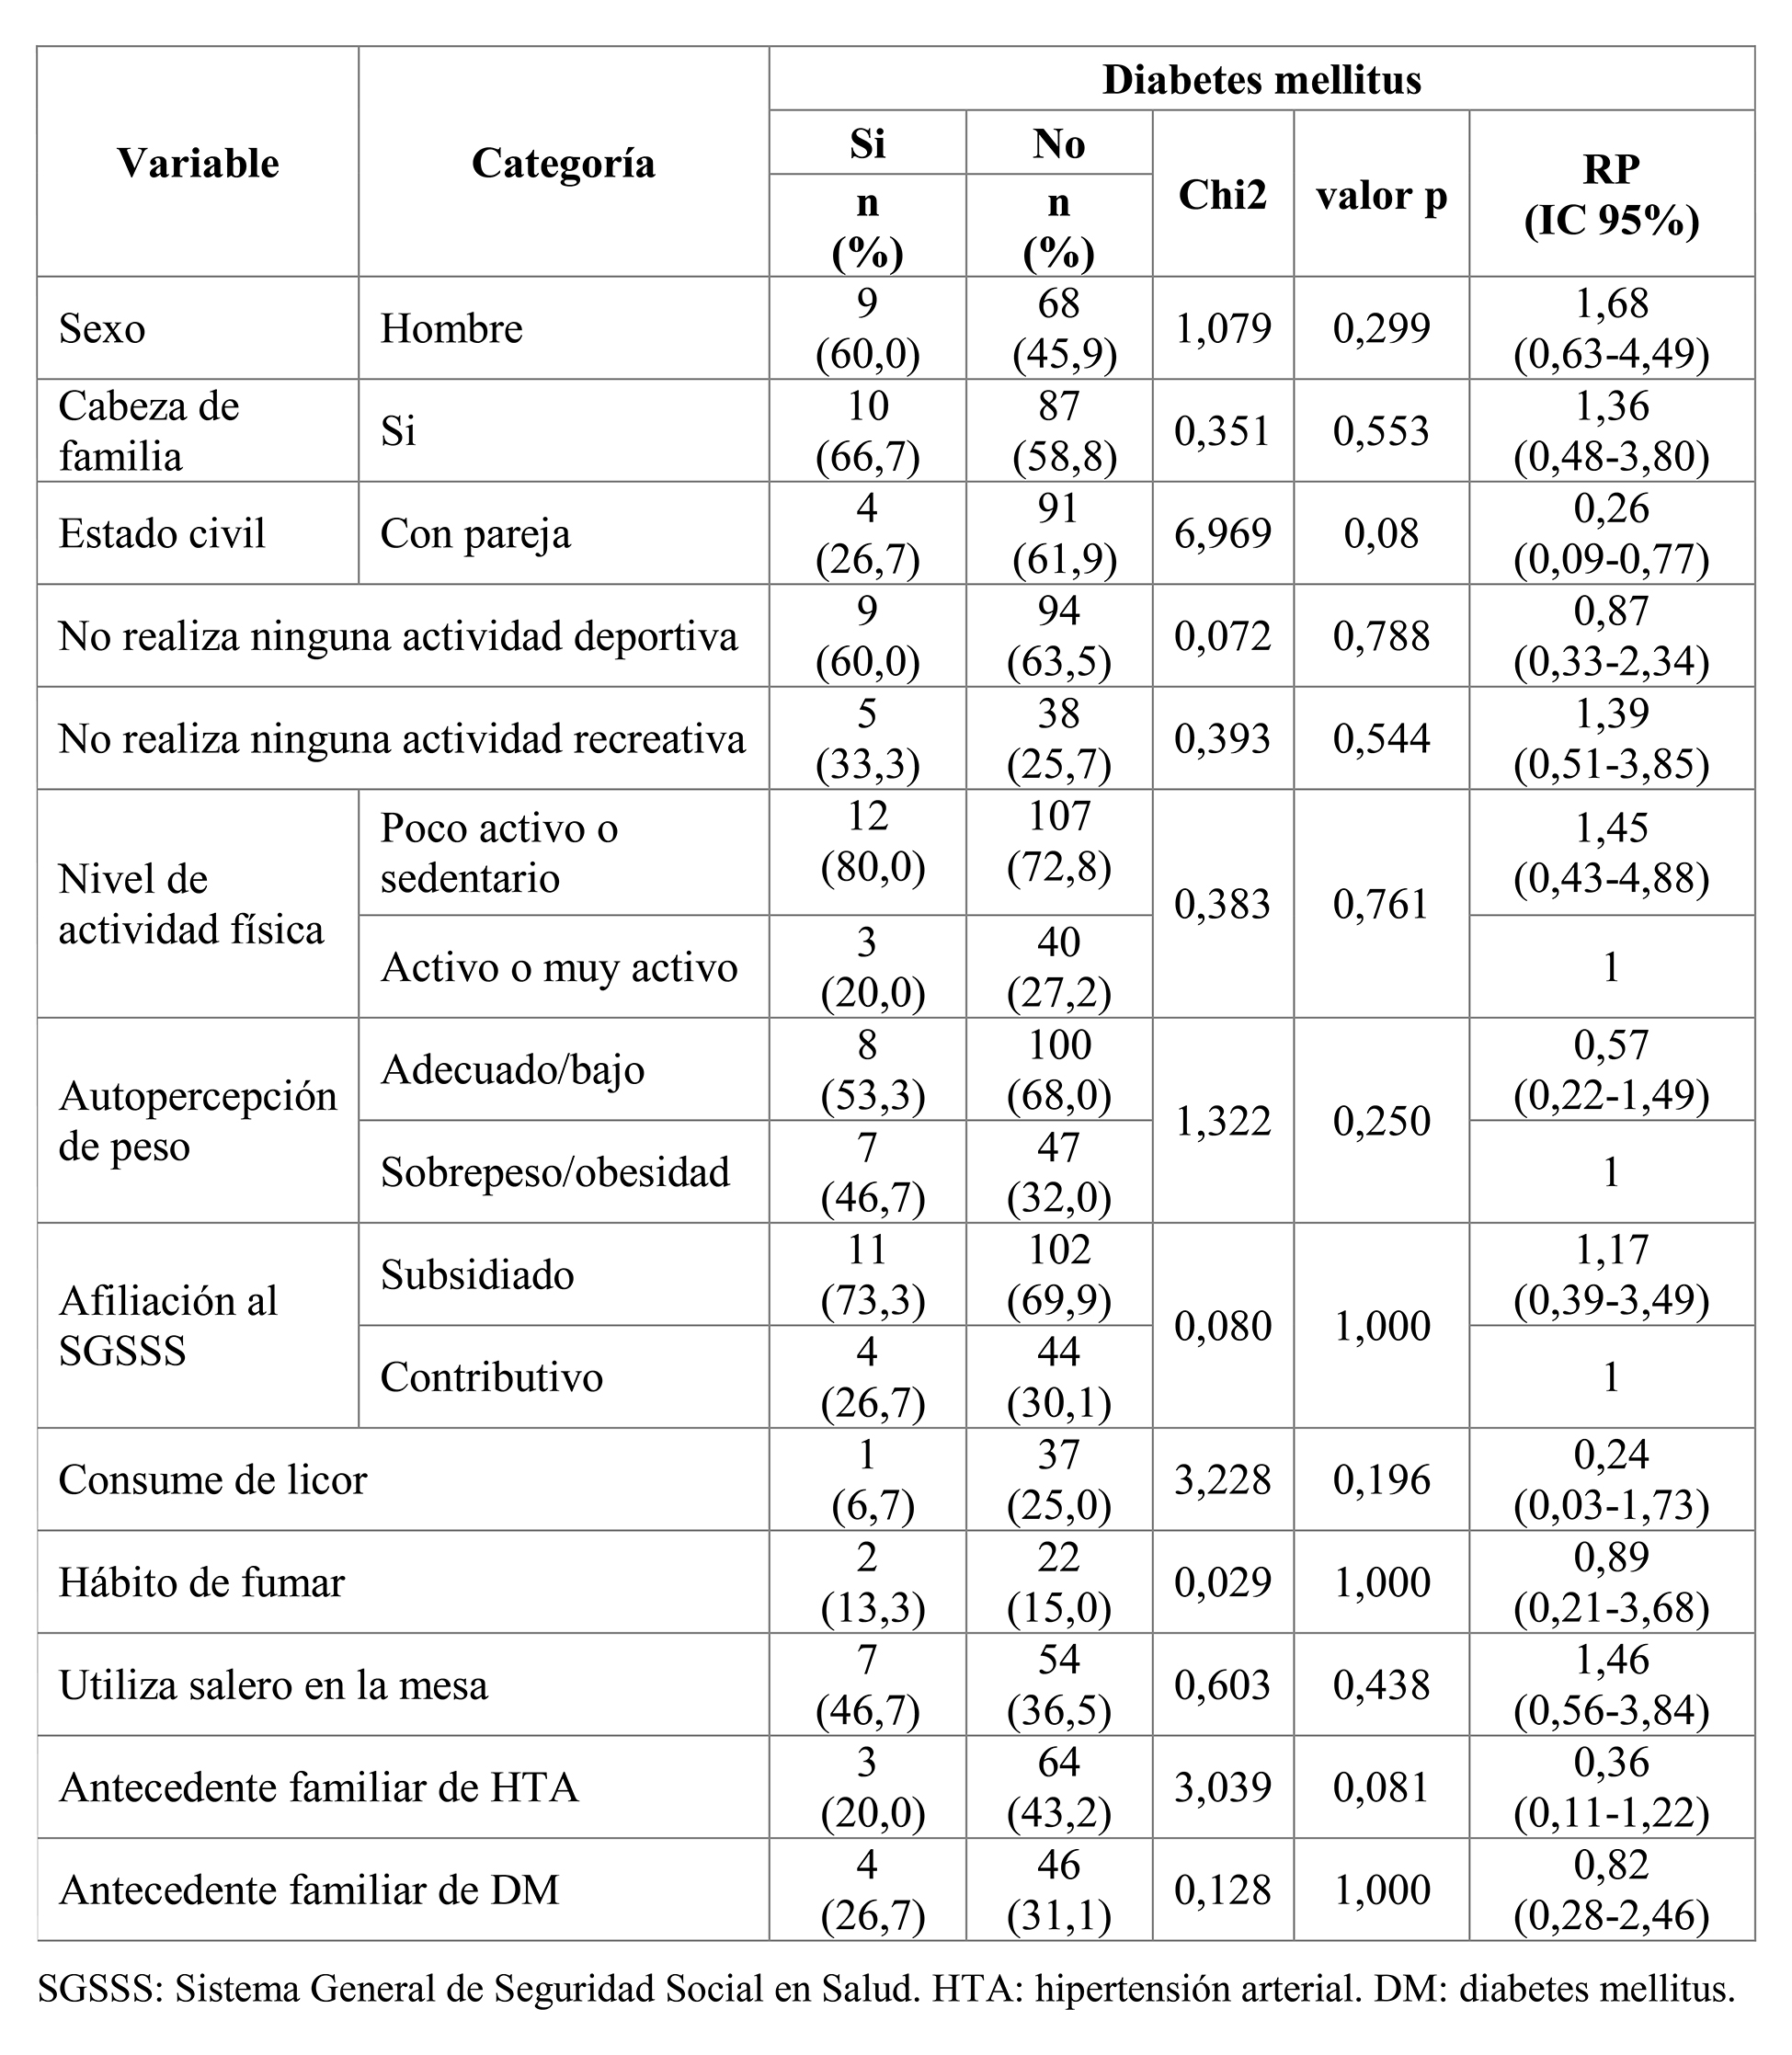 Análisis bivariado: tablas cruzadas entre las principales variables cualitativas y diabetes. N=152